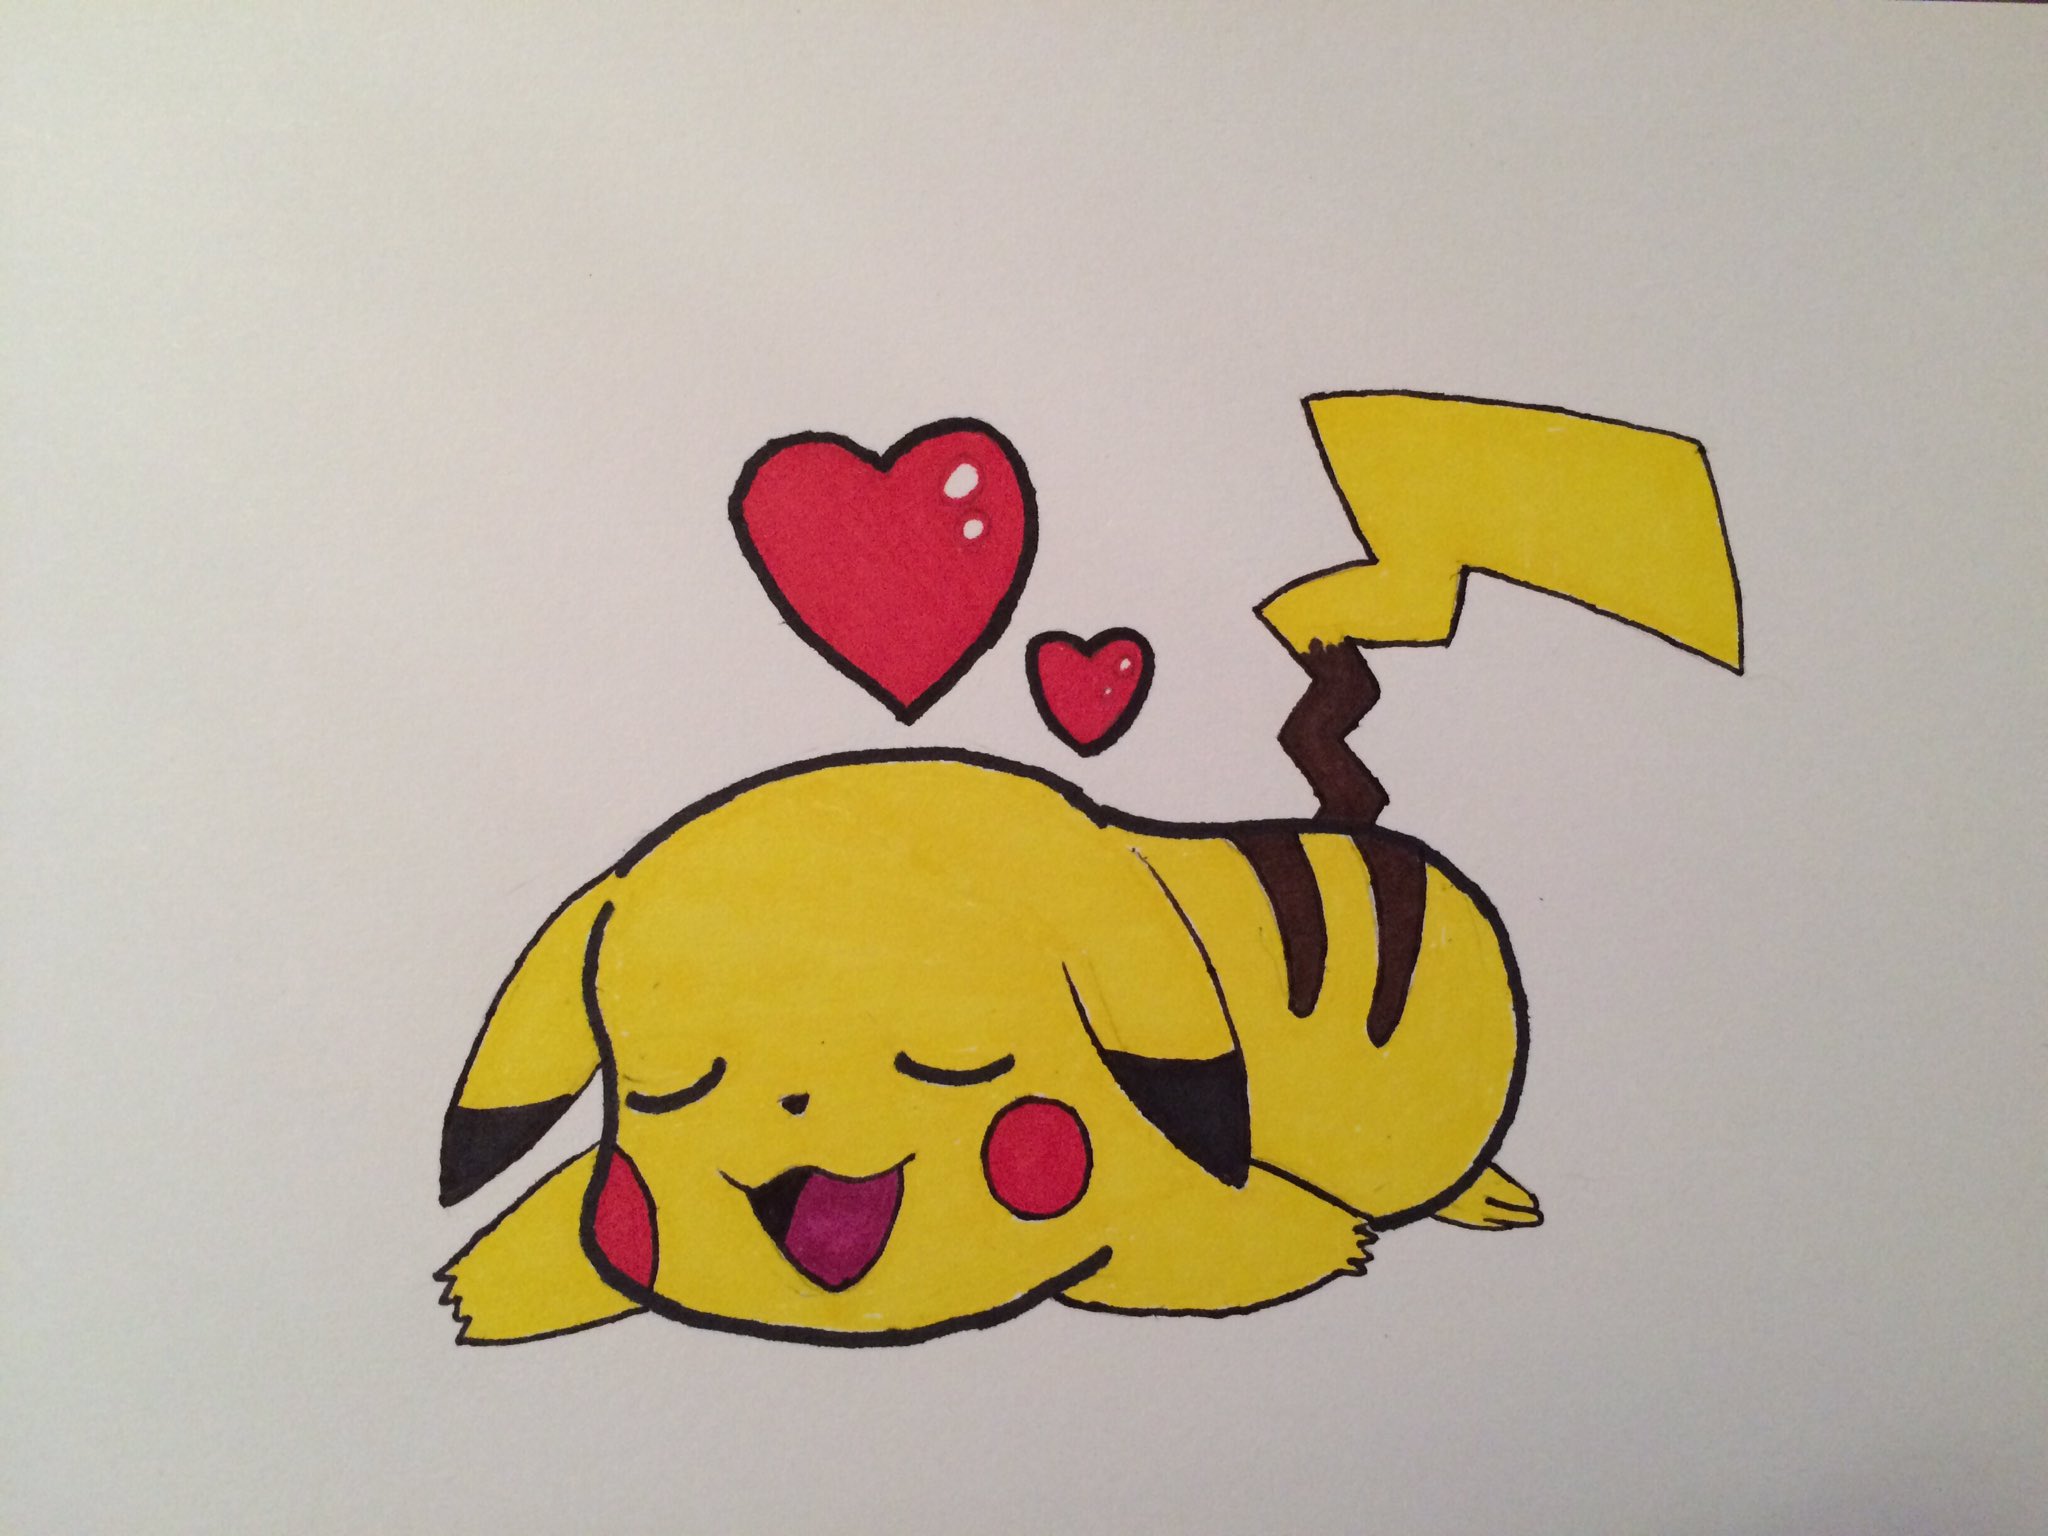 How to Draw Pikachu | Pokemon - YouTube